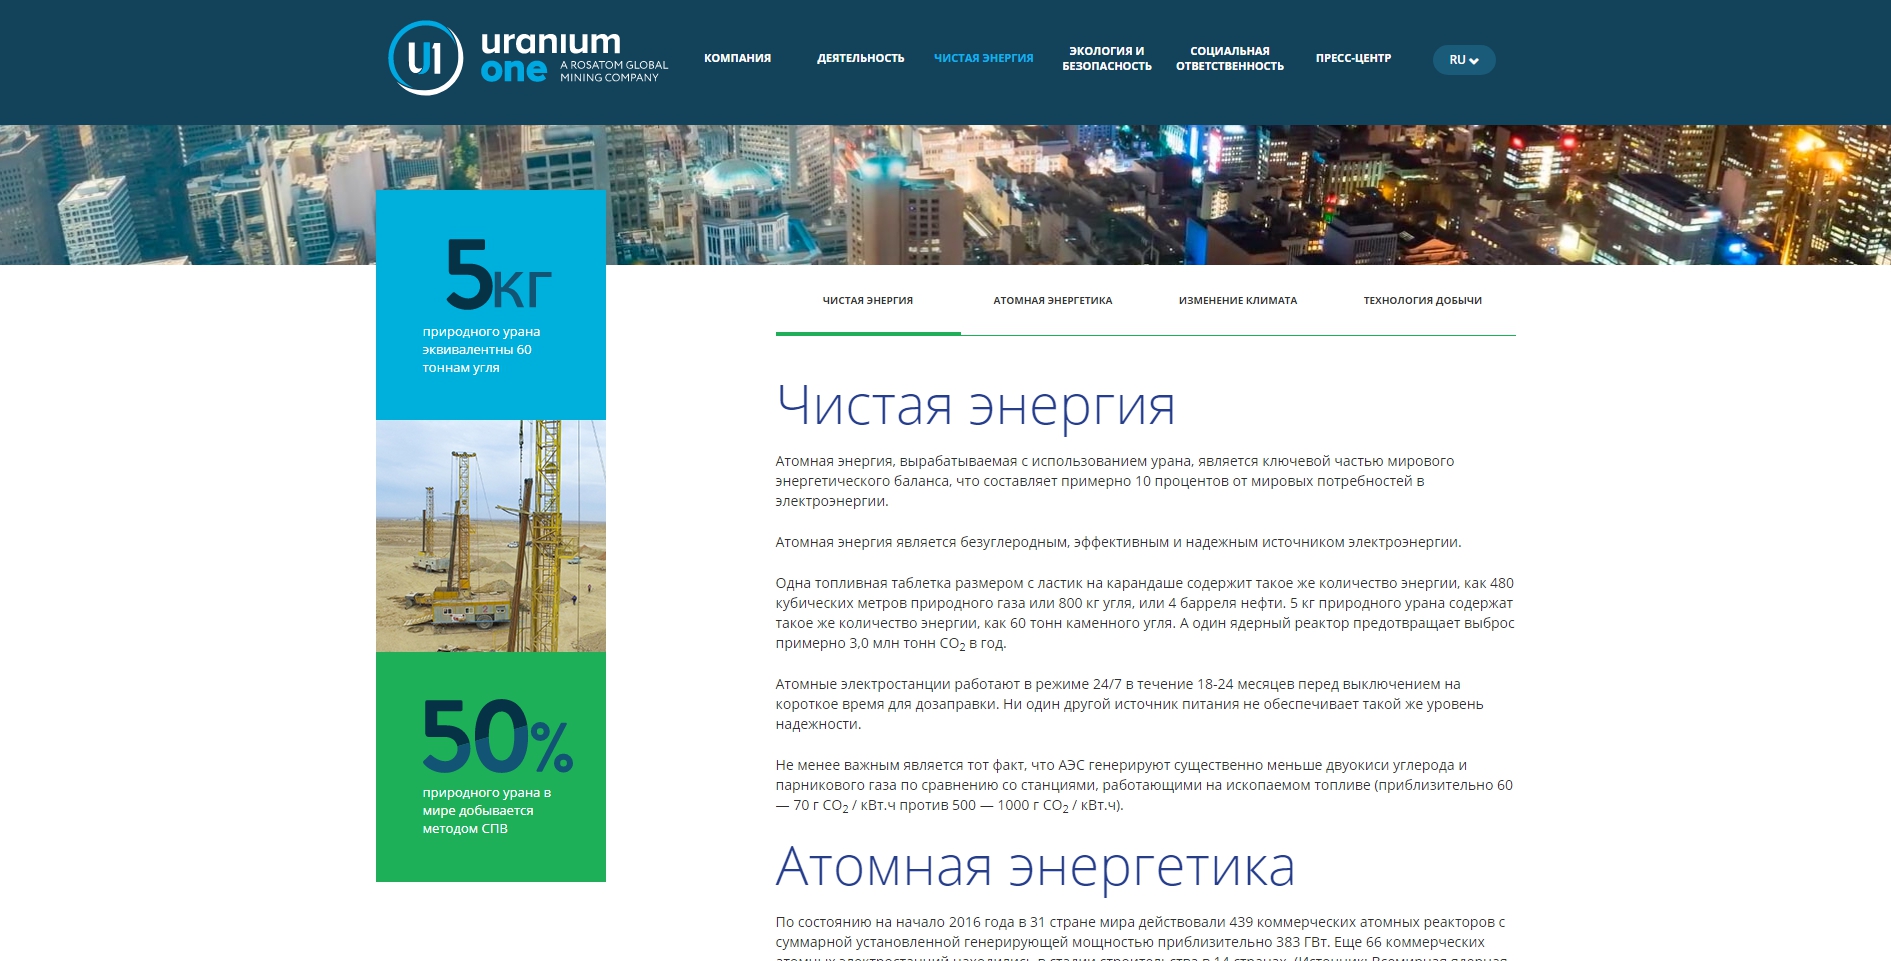 официальный сайт ао "ураниум уан груп"